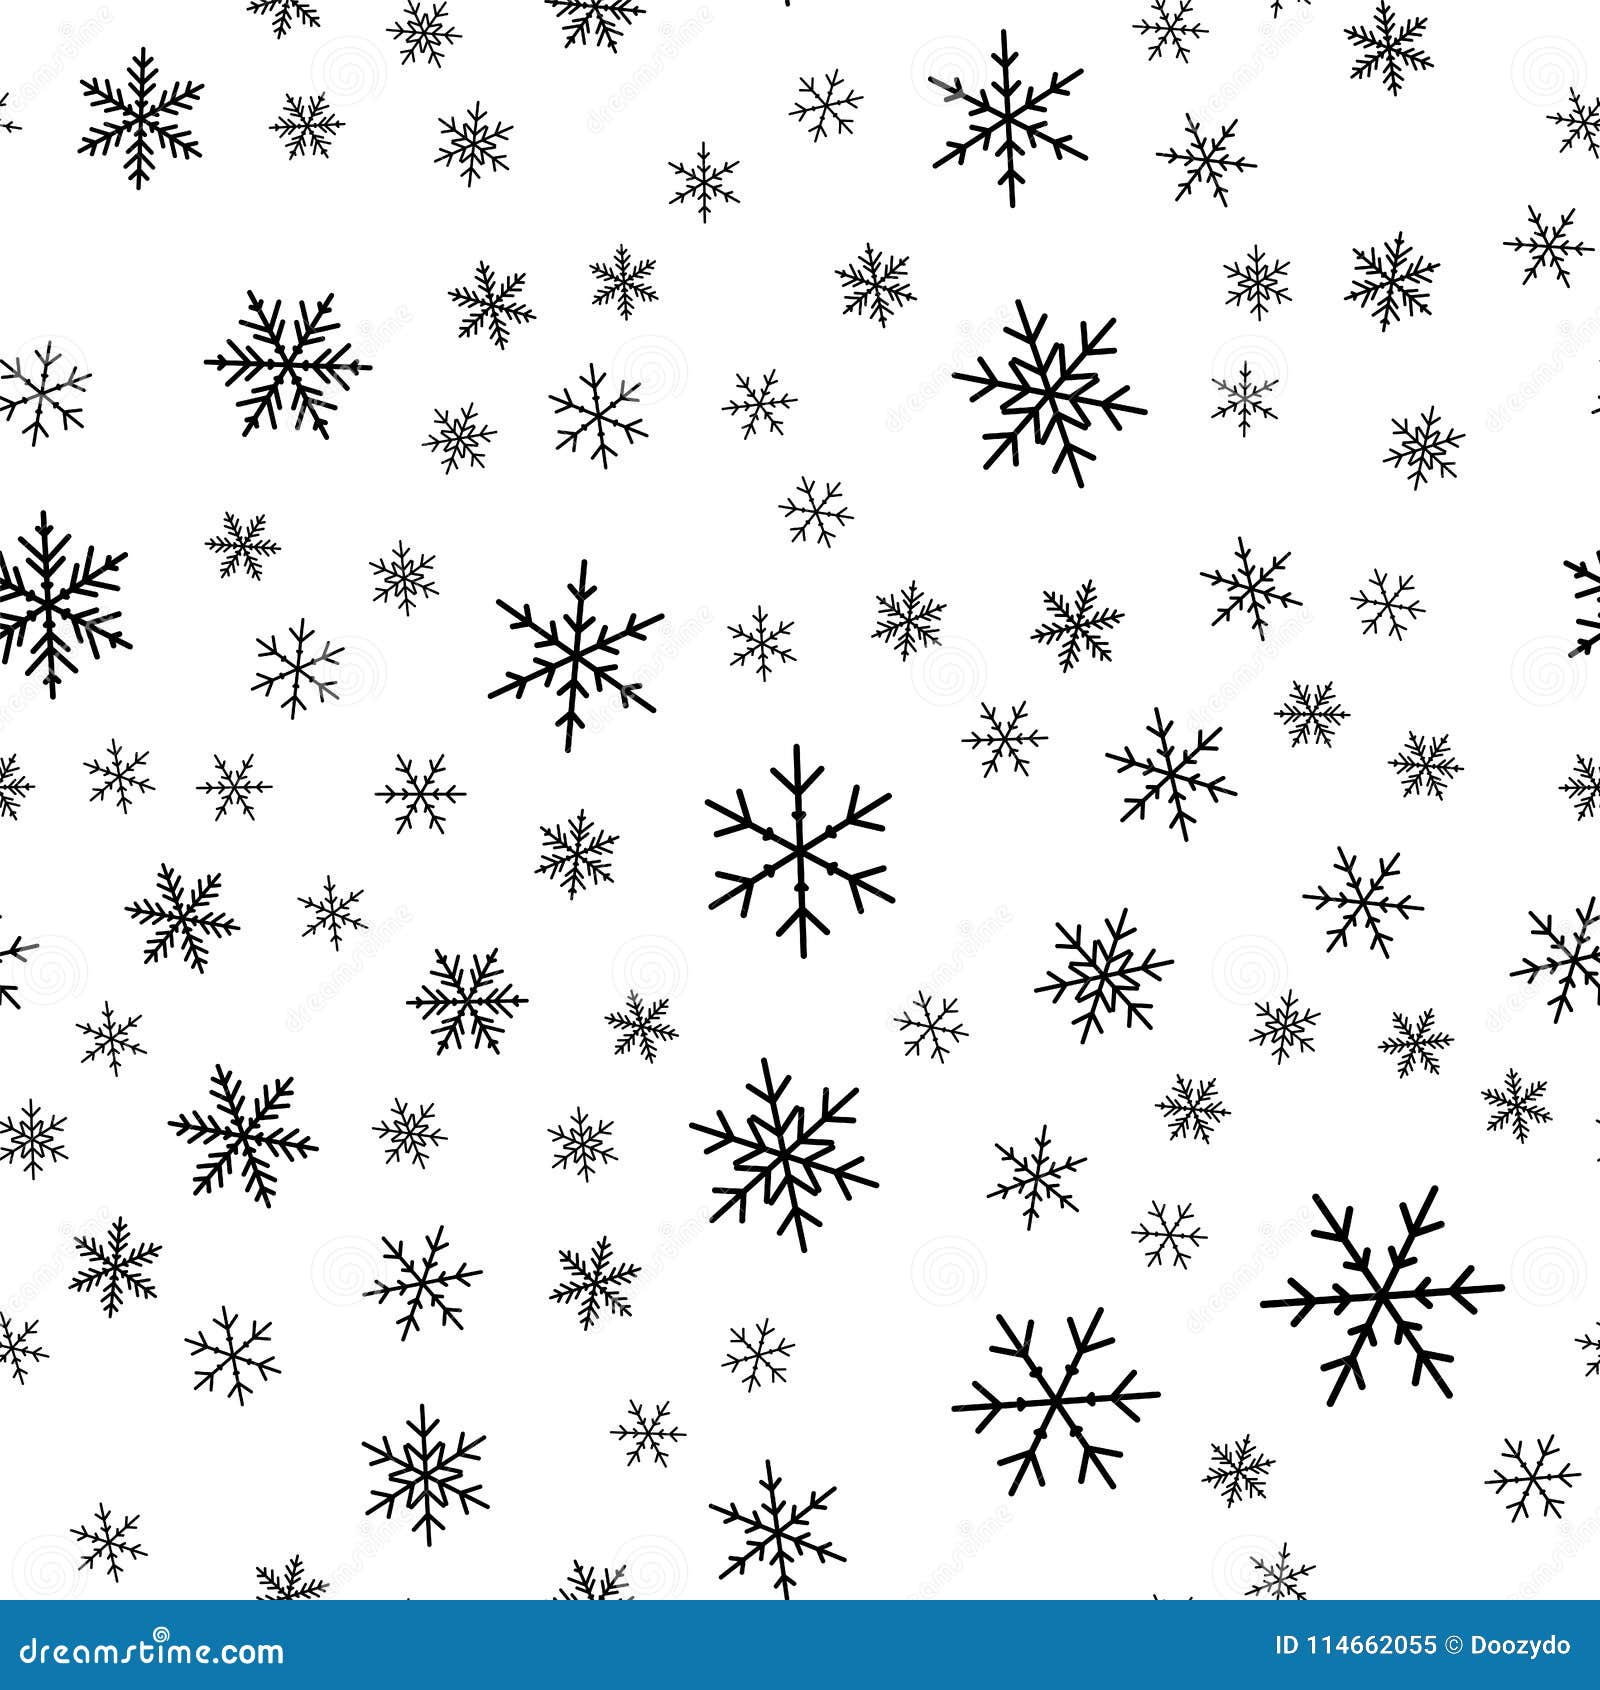 Vector mẫu tuyết tằm đen trên nền trắng sẽ mang đến cho bạn cảm giác thật tuyệt vời mỗi dịp Giáng sinh. Không chỉ đơn giản là hình ảnh tuyết đẹp mà chúng còn có thể được sử dụng cho mục đích trang trí rất hiệu quả.